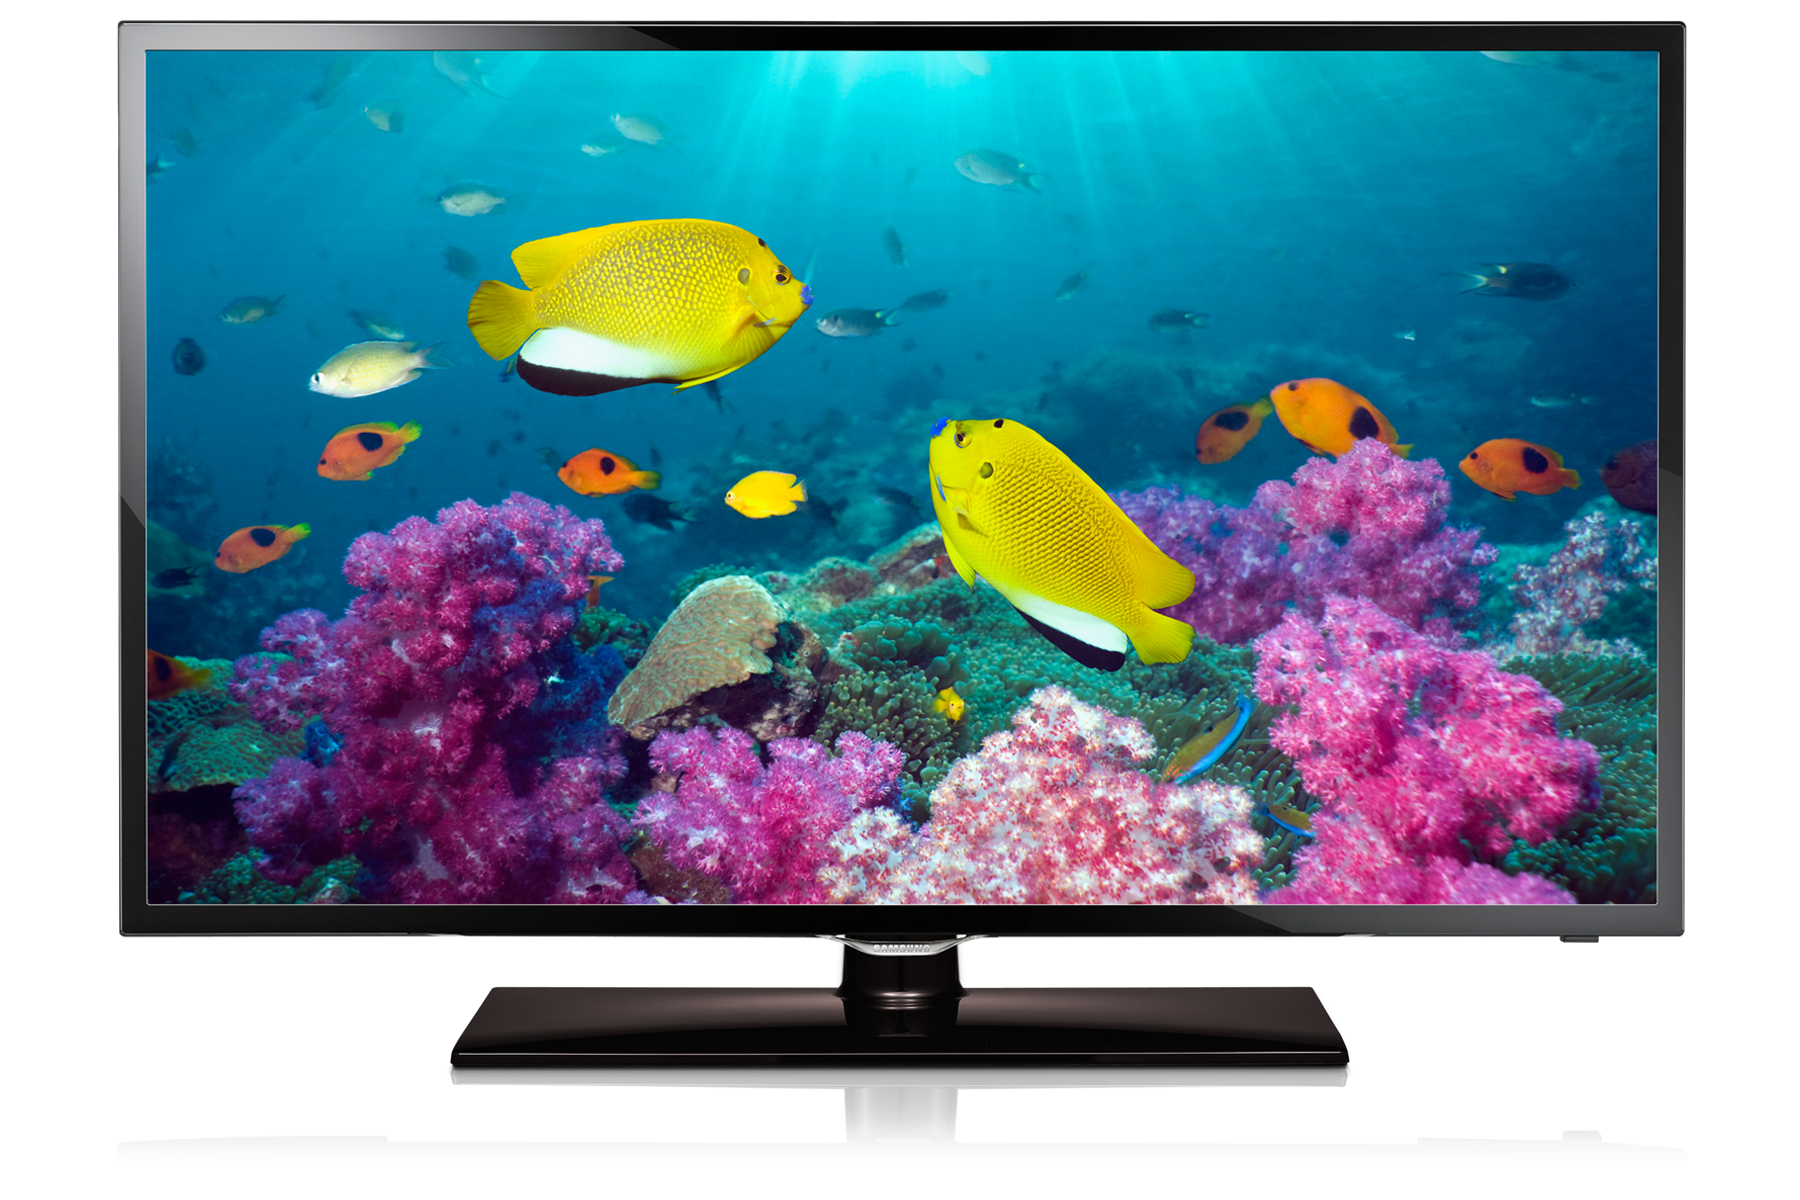 Tivi full HD giá rẻ LED Samsung UA40F5100 40 inch có thiết kế sang trọng, hình ảnh tốt ở mọi góc nhìn